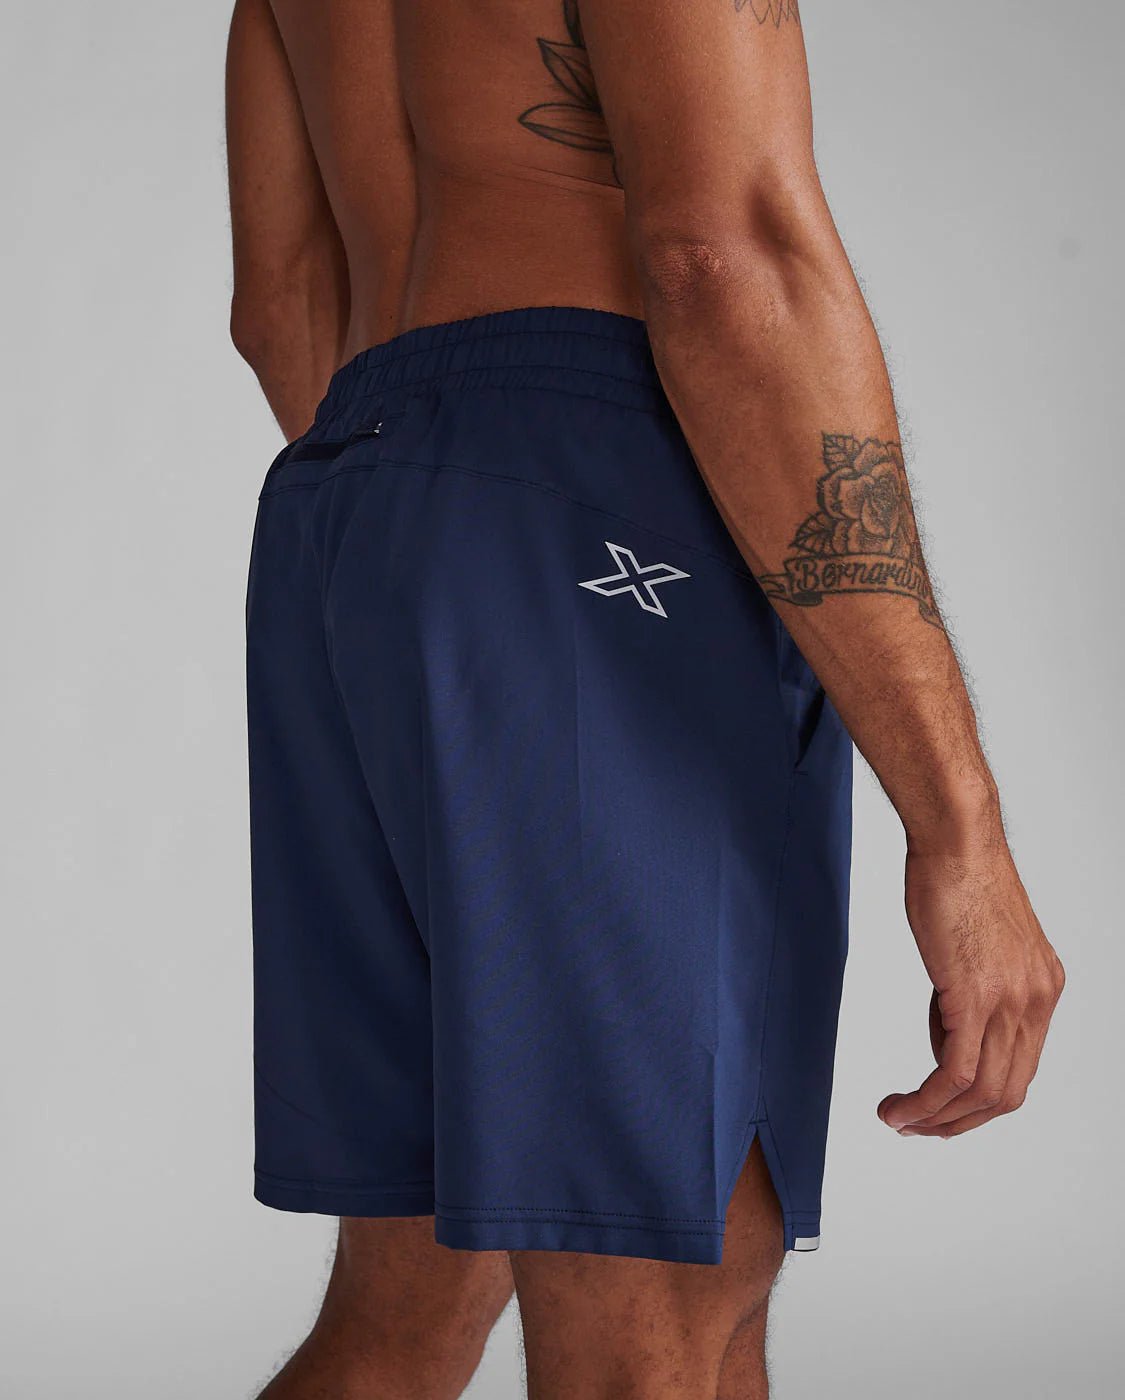 2XU Aero 7inch Shorts - mens - Shorts - Trek, Trail & Fish NZ